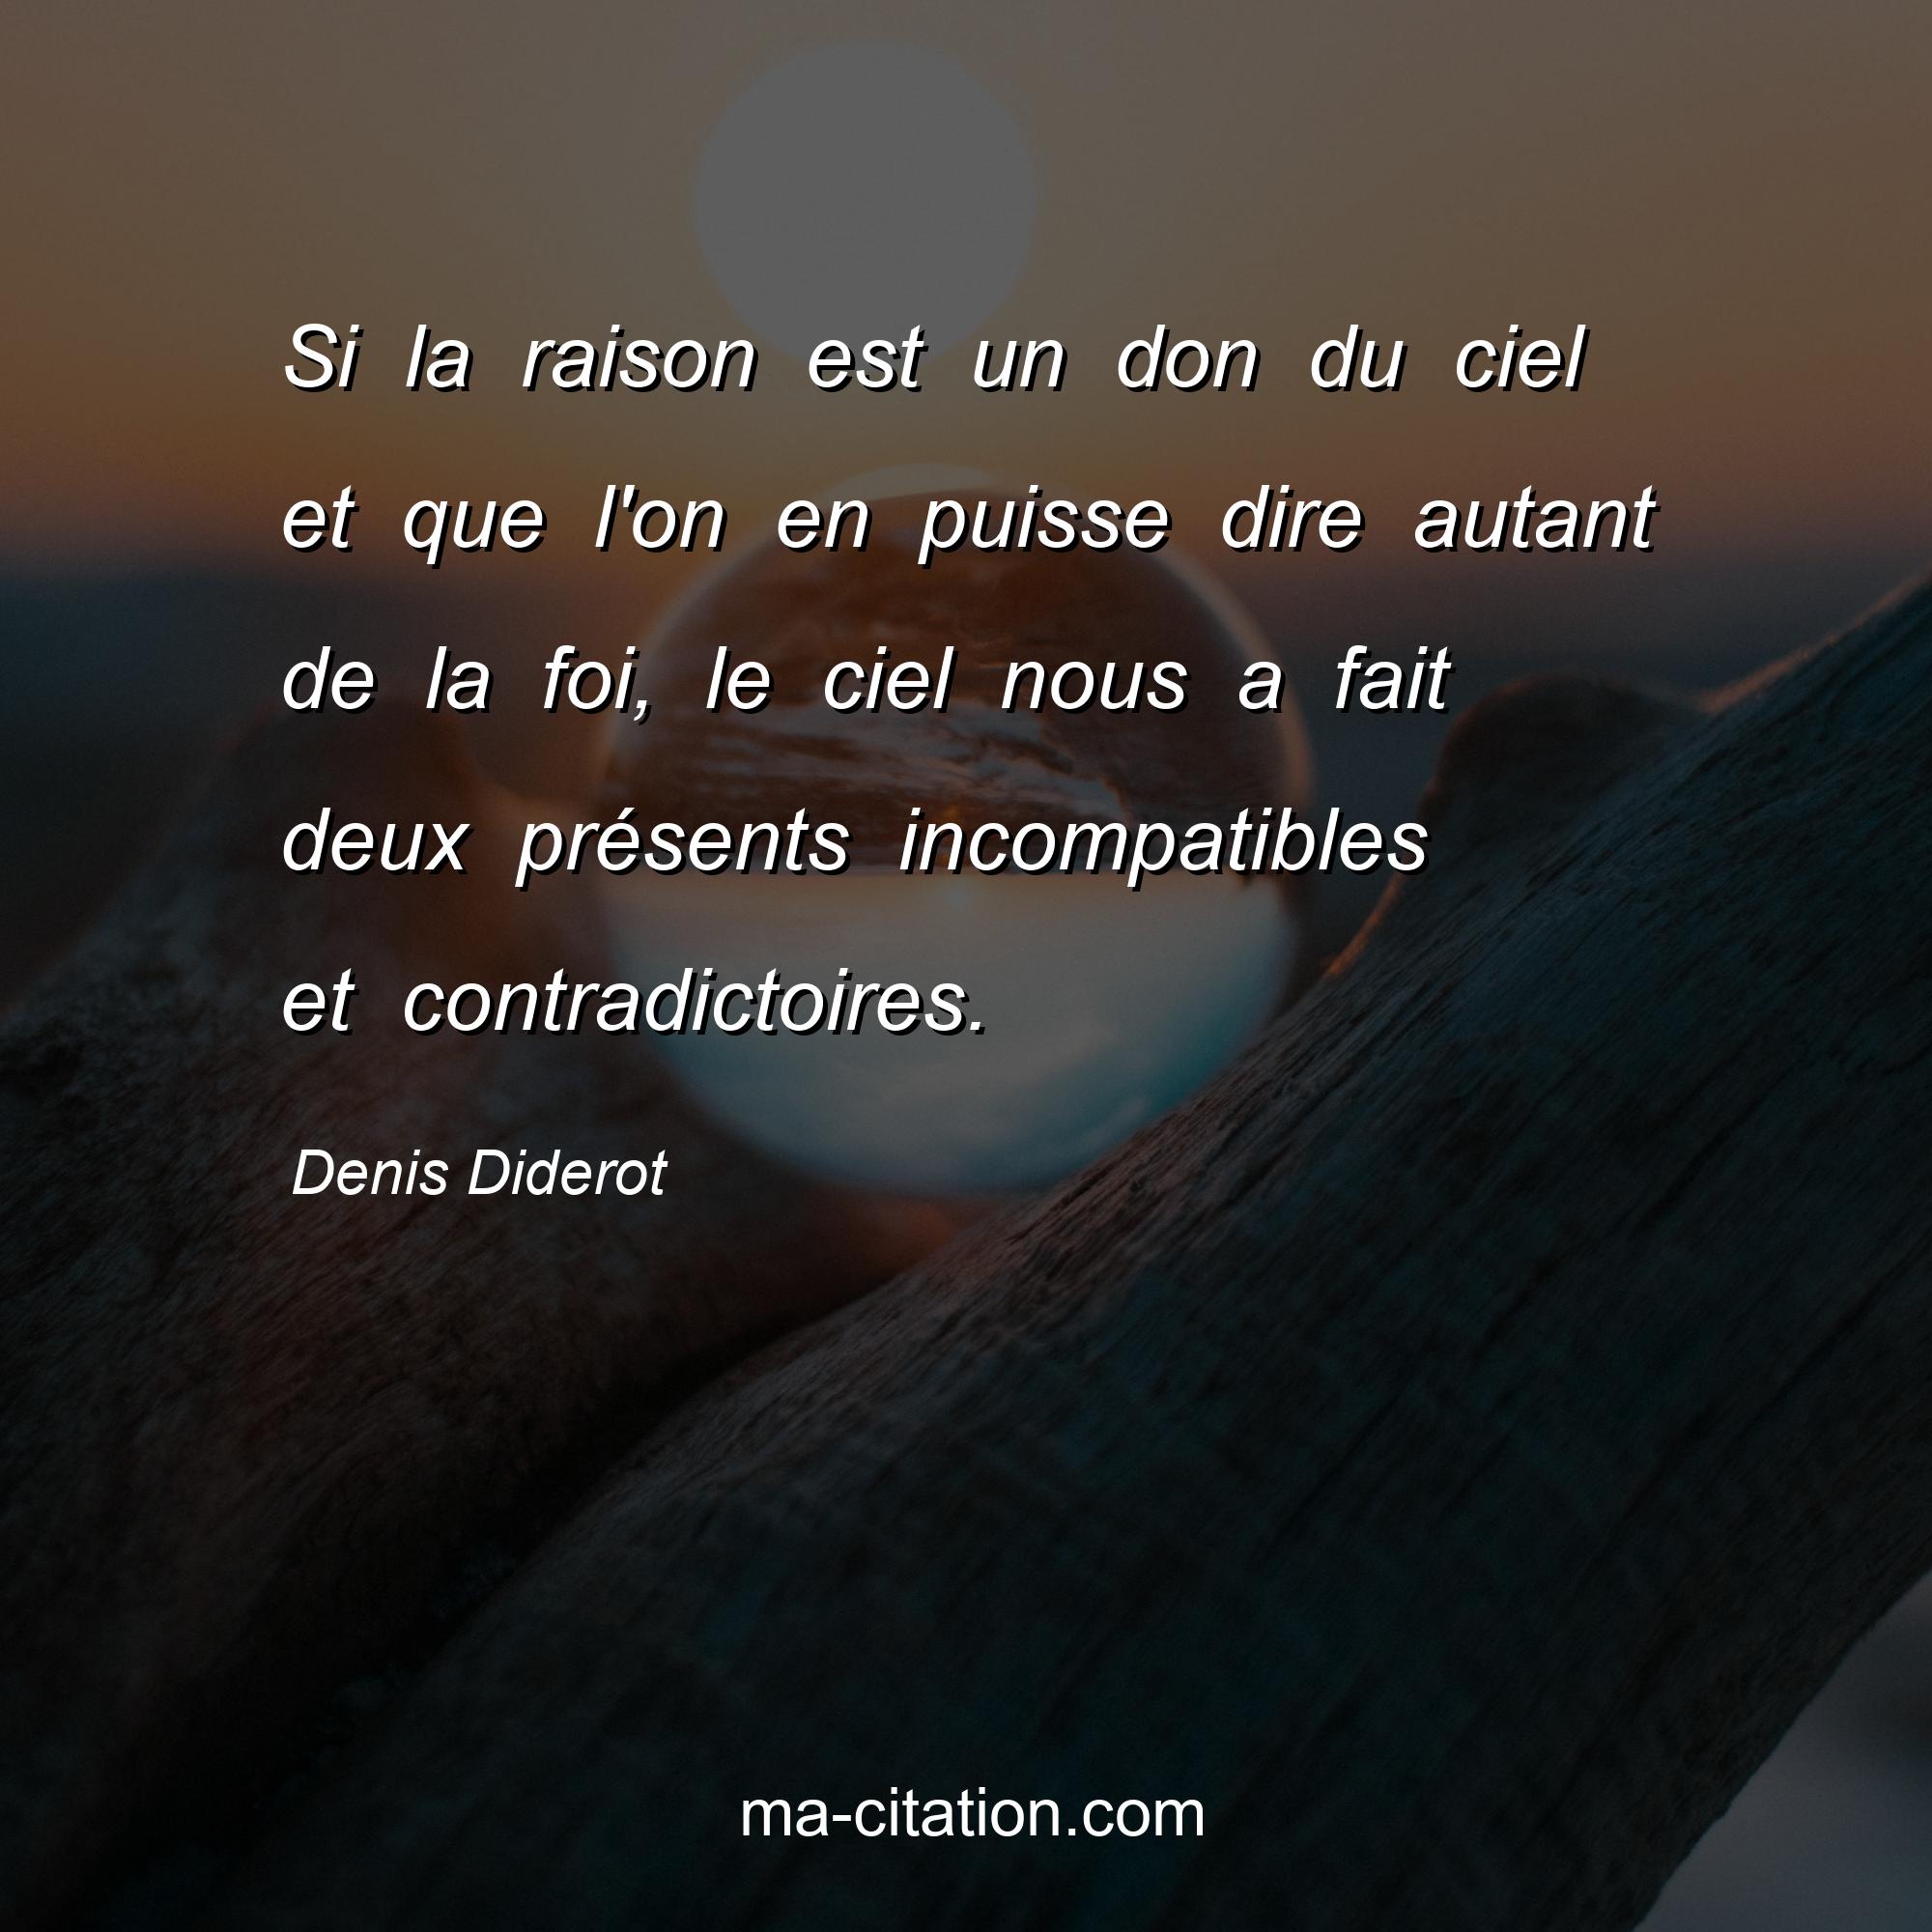 Denis Diderot : Si la raison est un don du ciel et que l'on en puisse dire autant de la foi, le ciel nous a fait deux présents incompatibles et contradictoires.